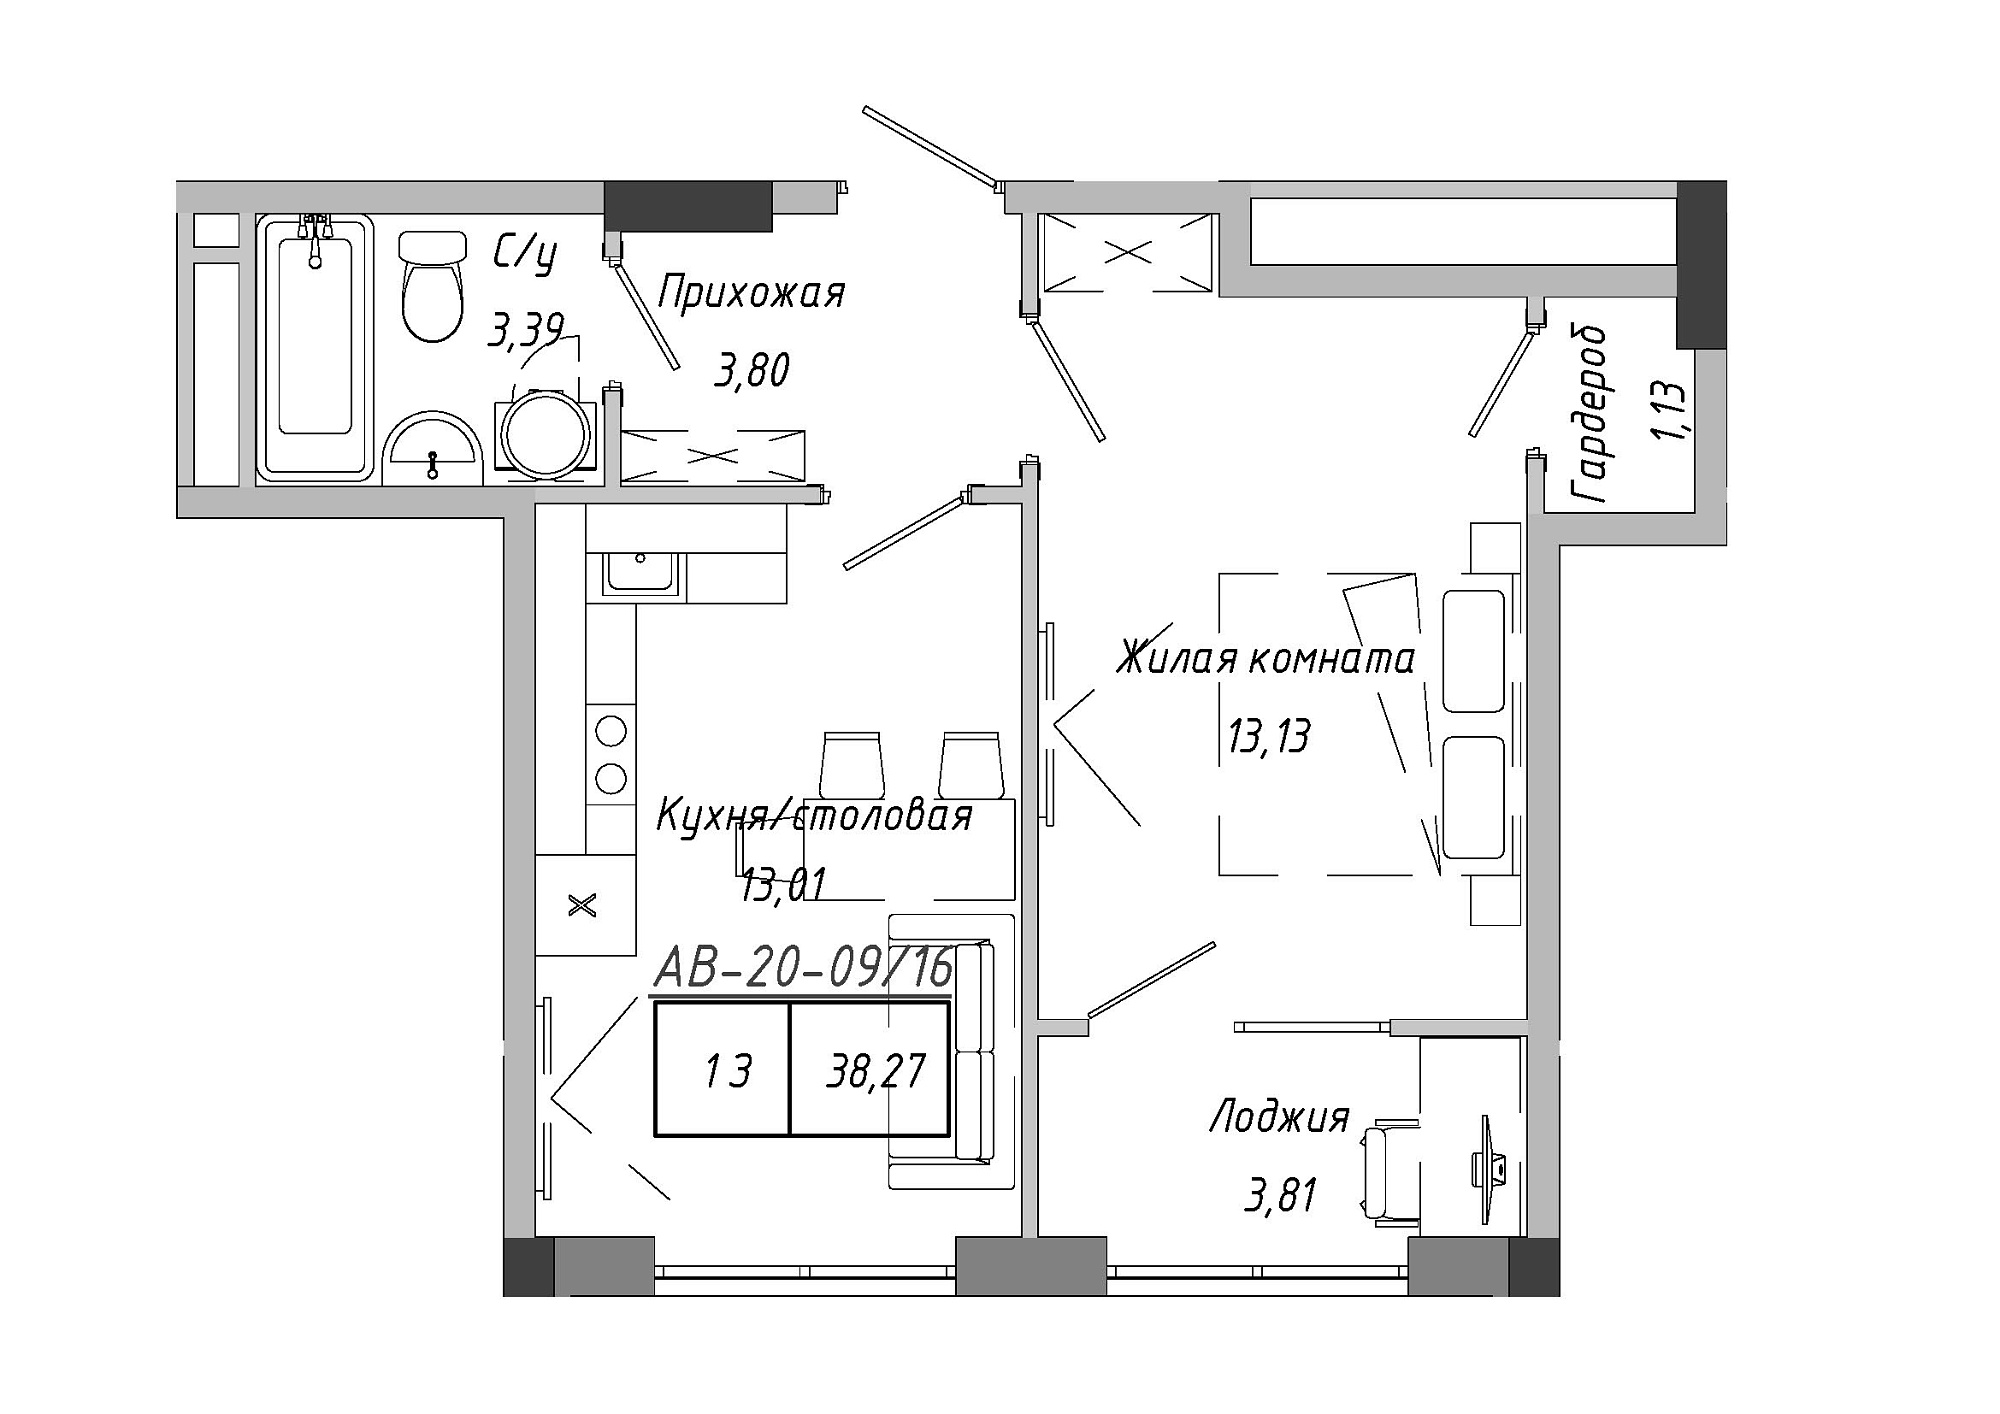 Планировка 1-к квартира площей 38.79м2, AB-20-09/00016.